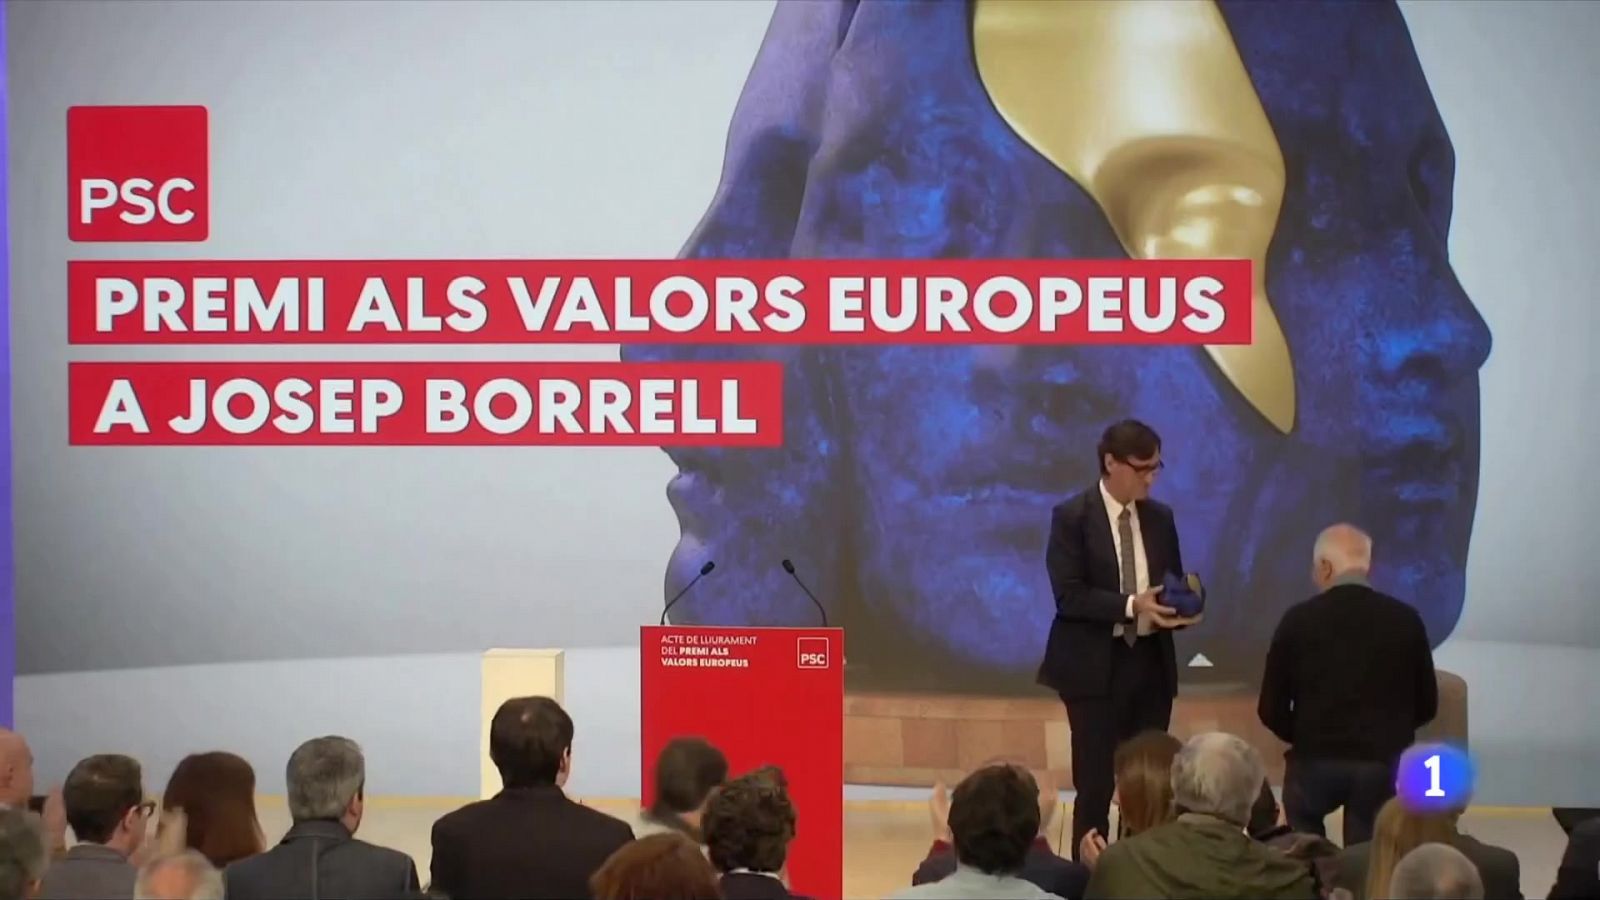 Borrell recull el premi del PSC pels valors europeus